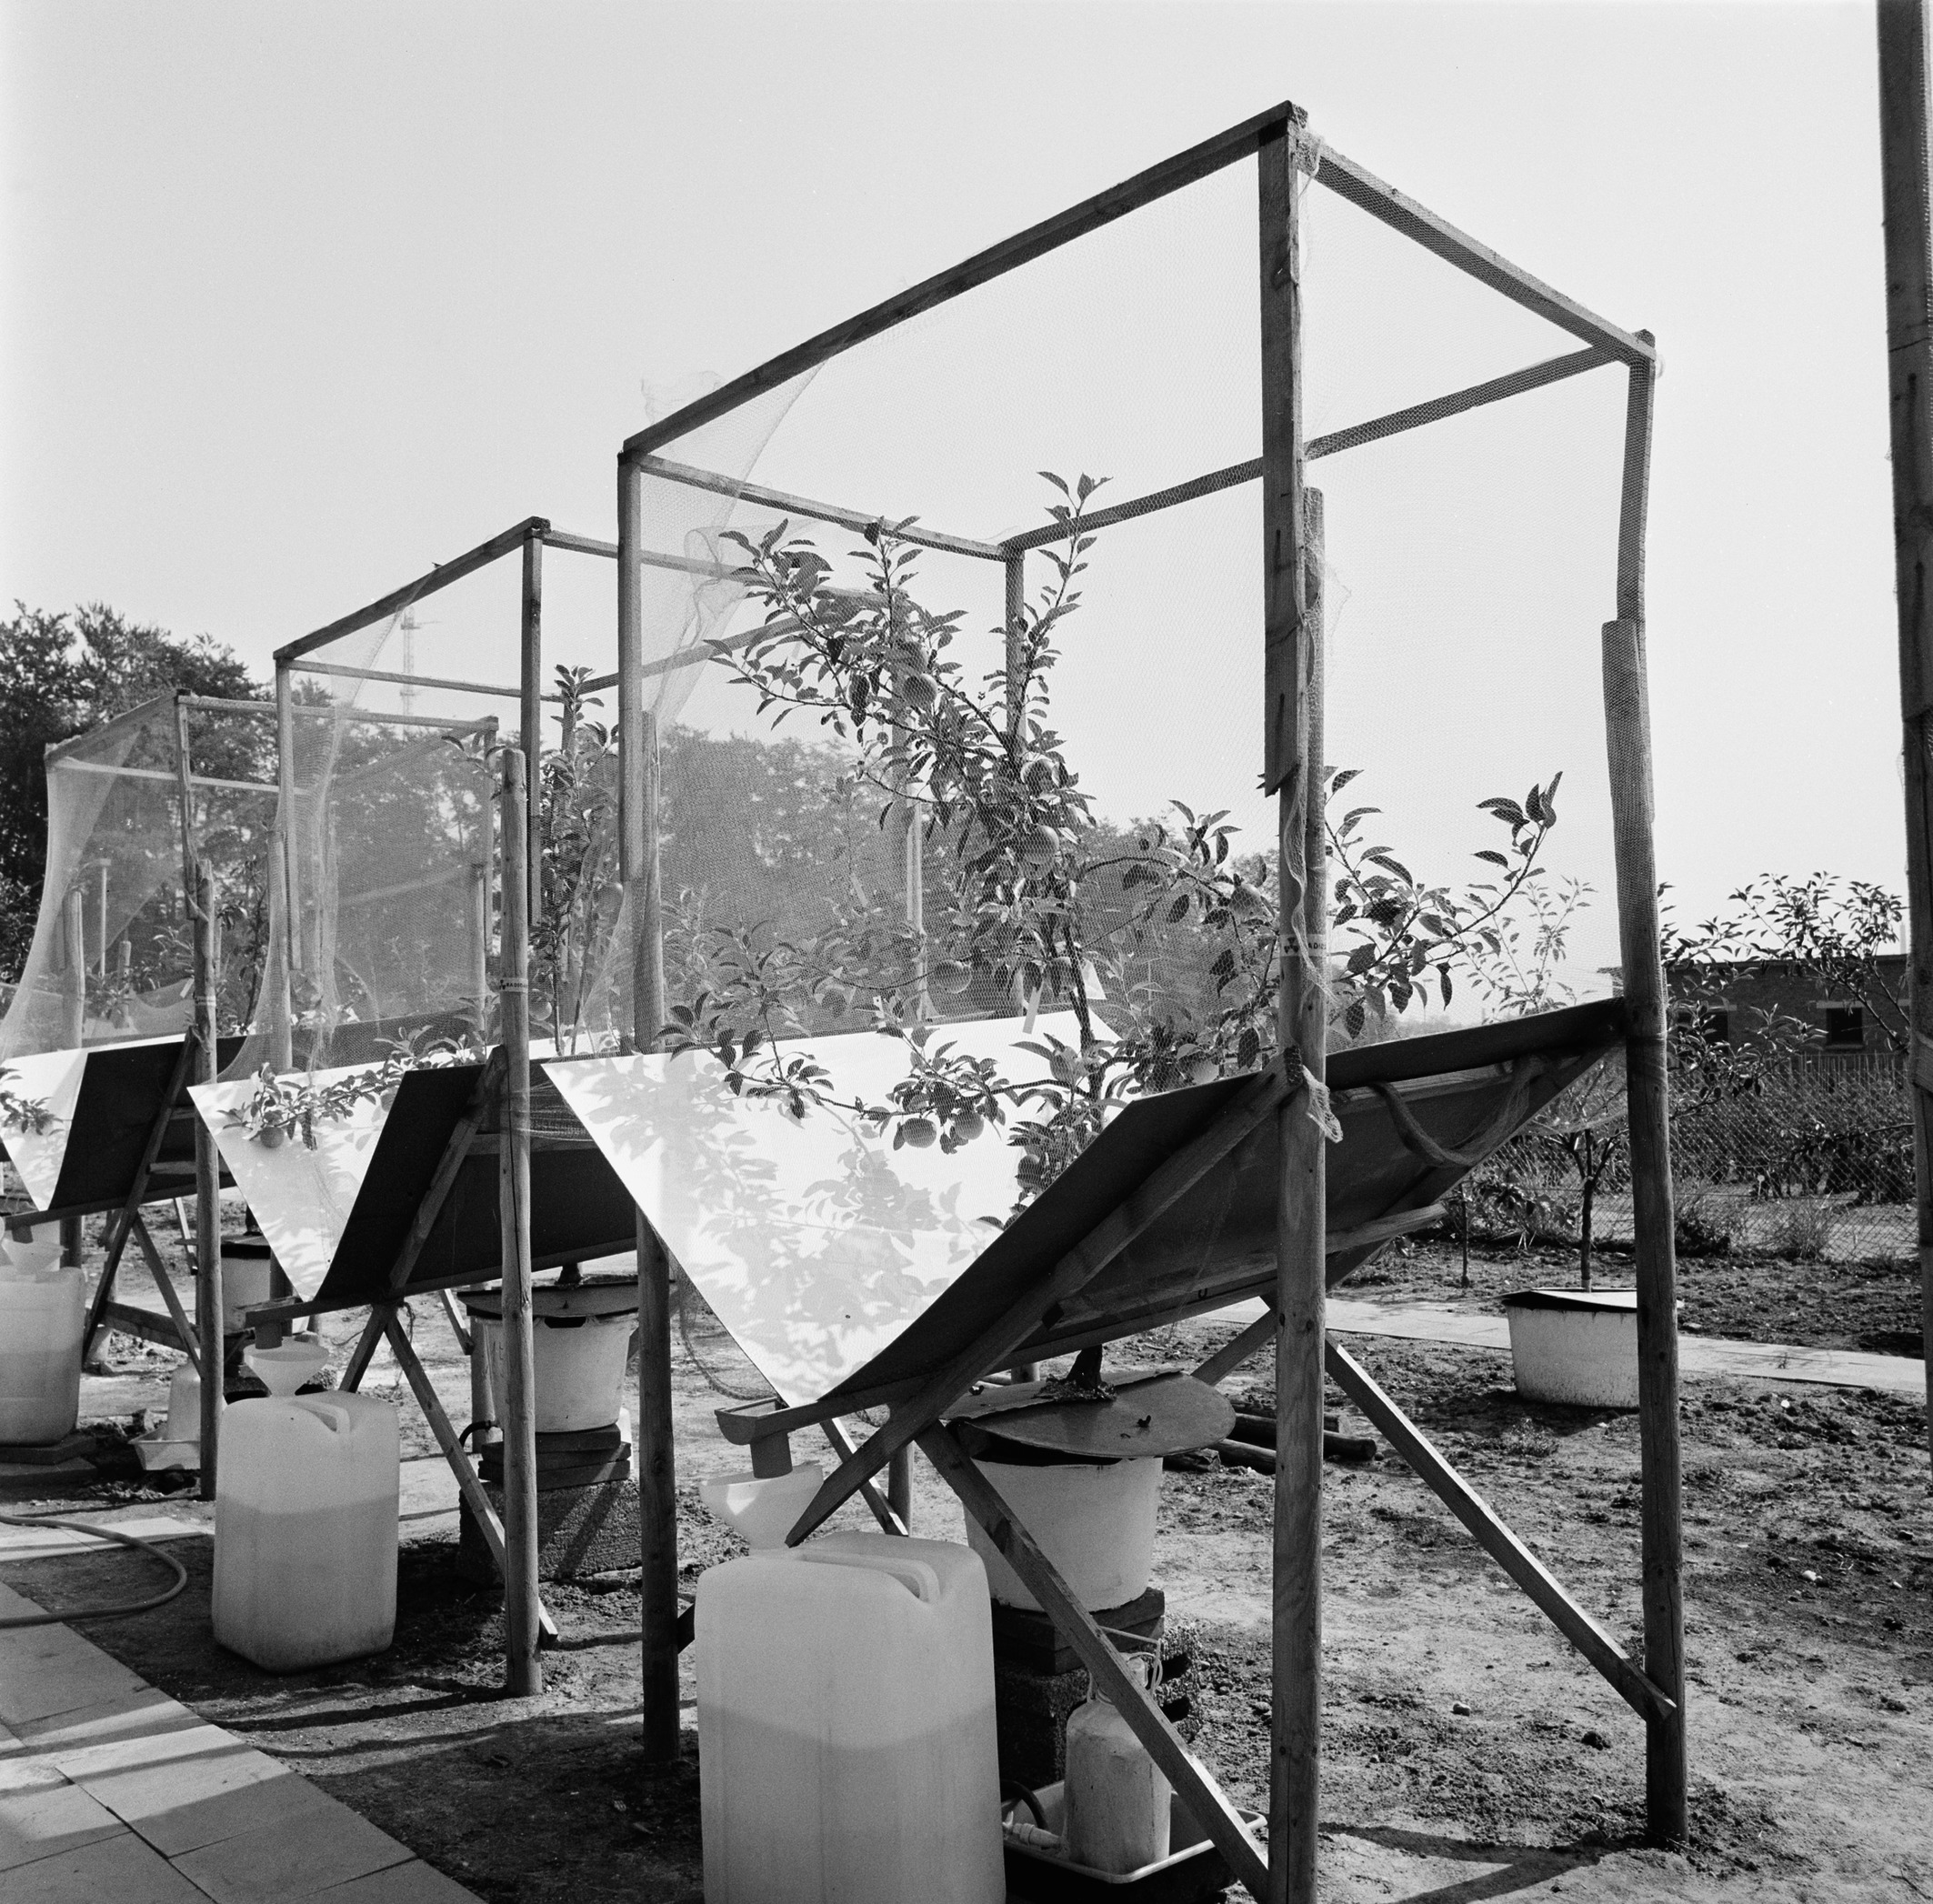 Blick auf zwei Apfelbäume mit Entwässerungsmesseinrichtung, ca. 1970